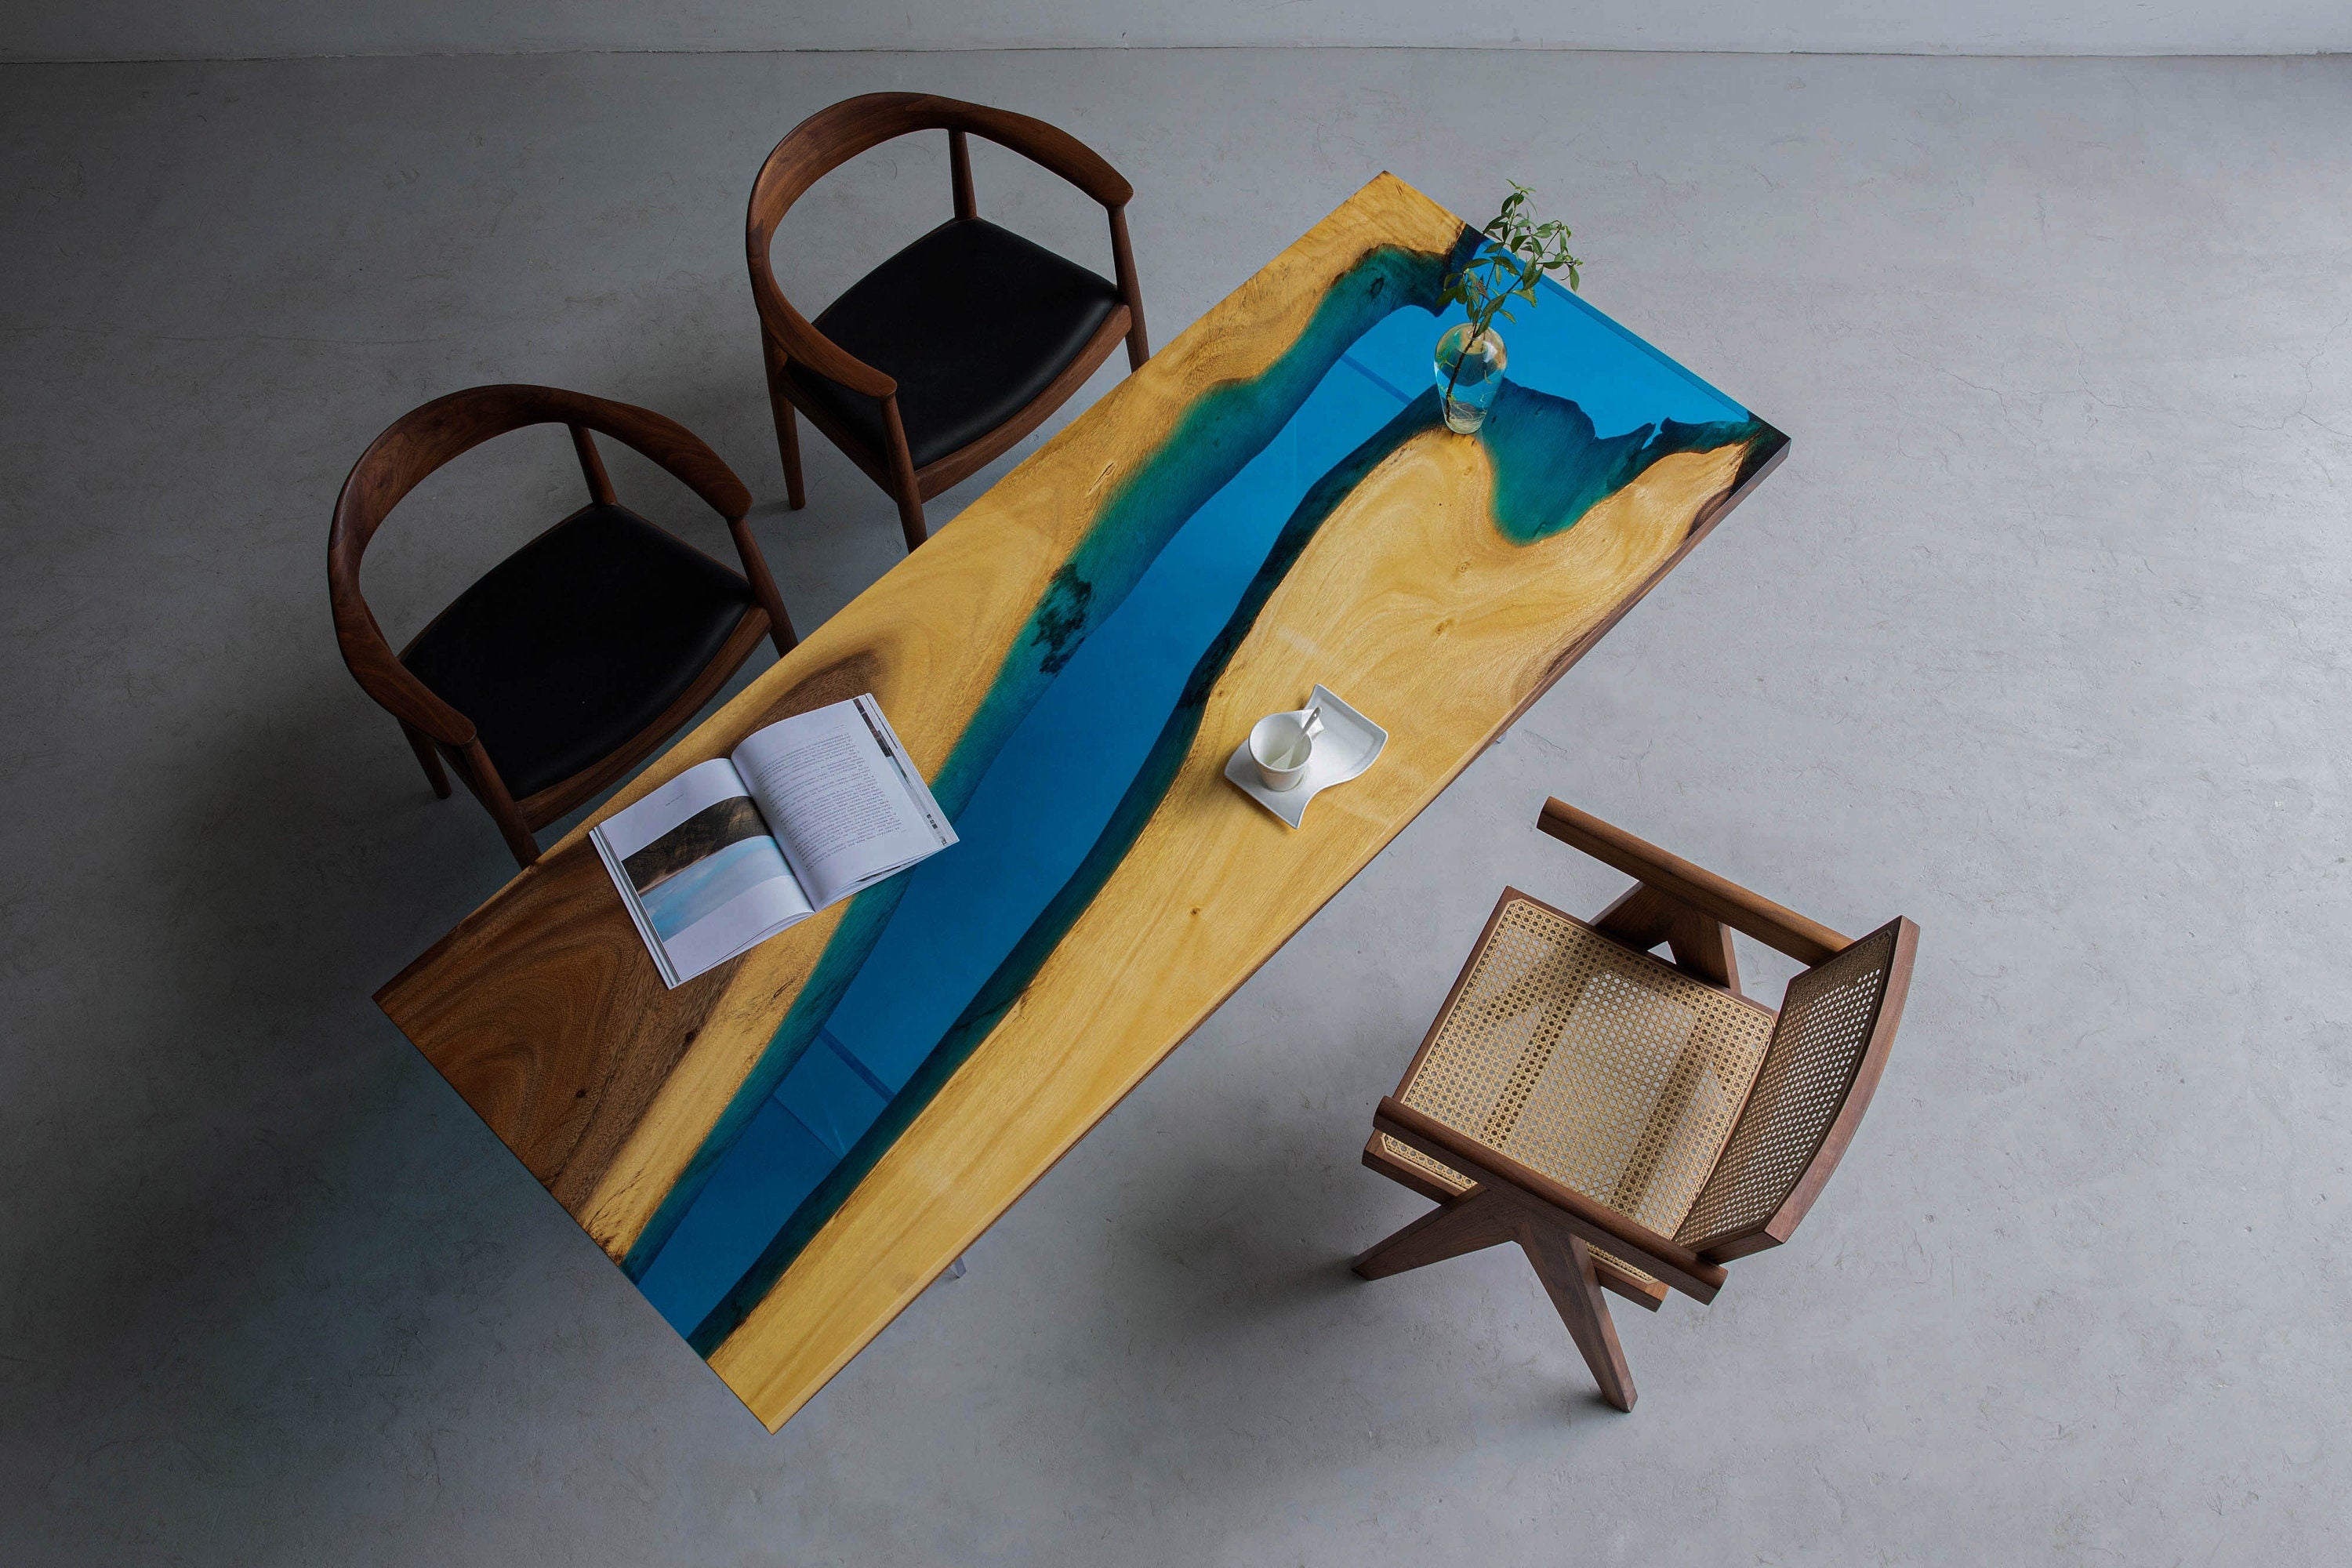 طاولة المطبخ الايبوكسي، طاولة النهر الأزرق، طاولة الايبوكسي النهر الأزرق، بلاطة الايبوكسي، مكتب الايبوكسي